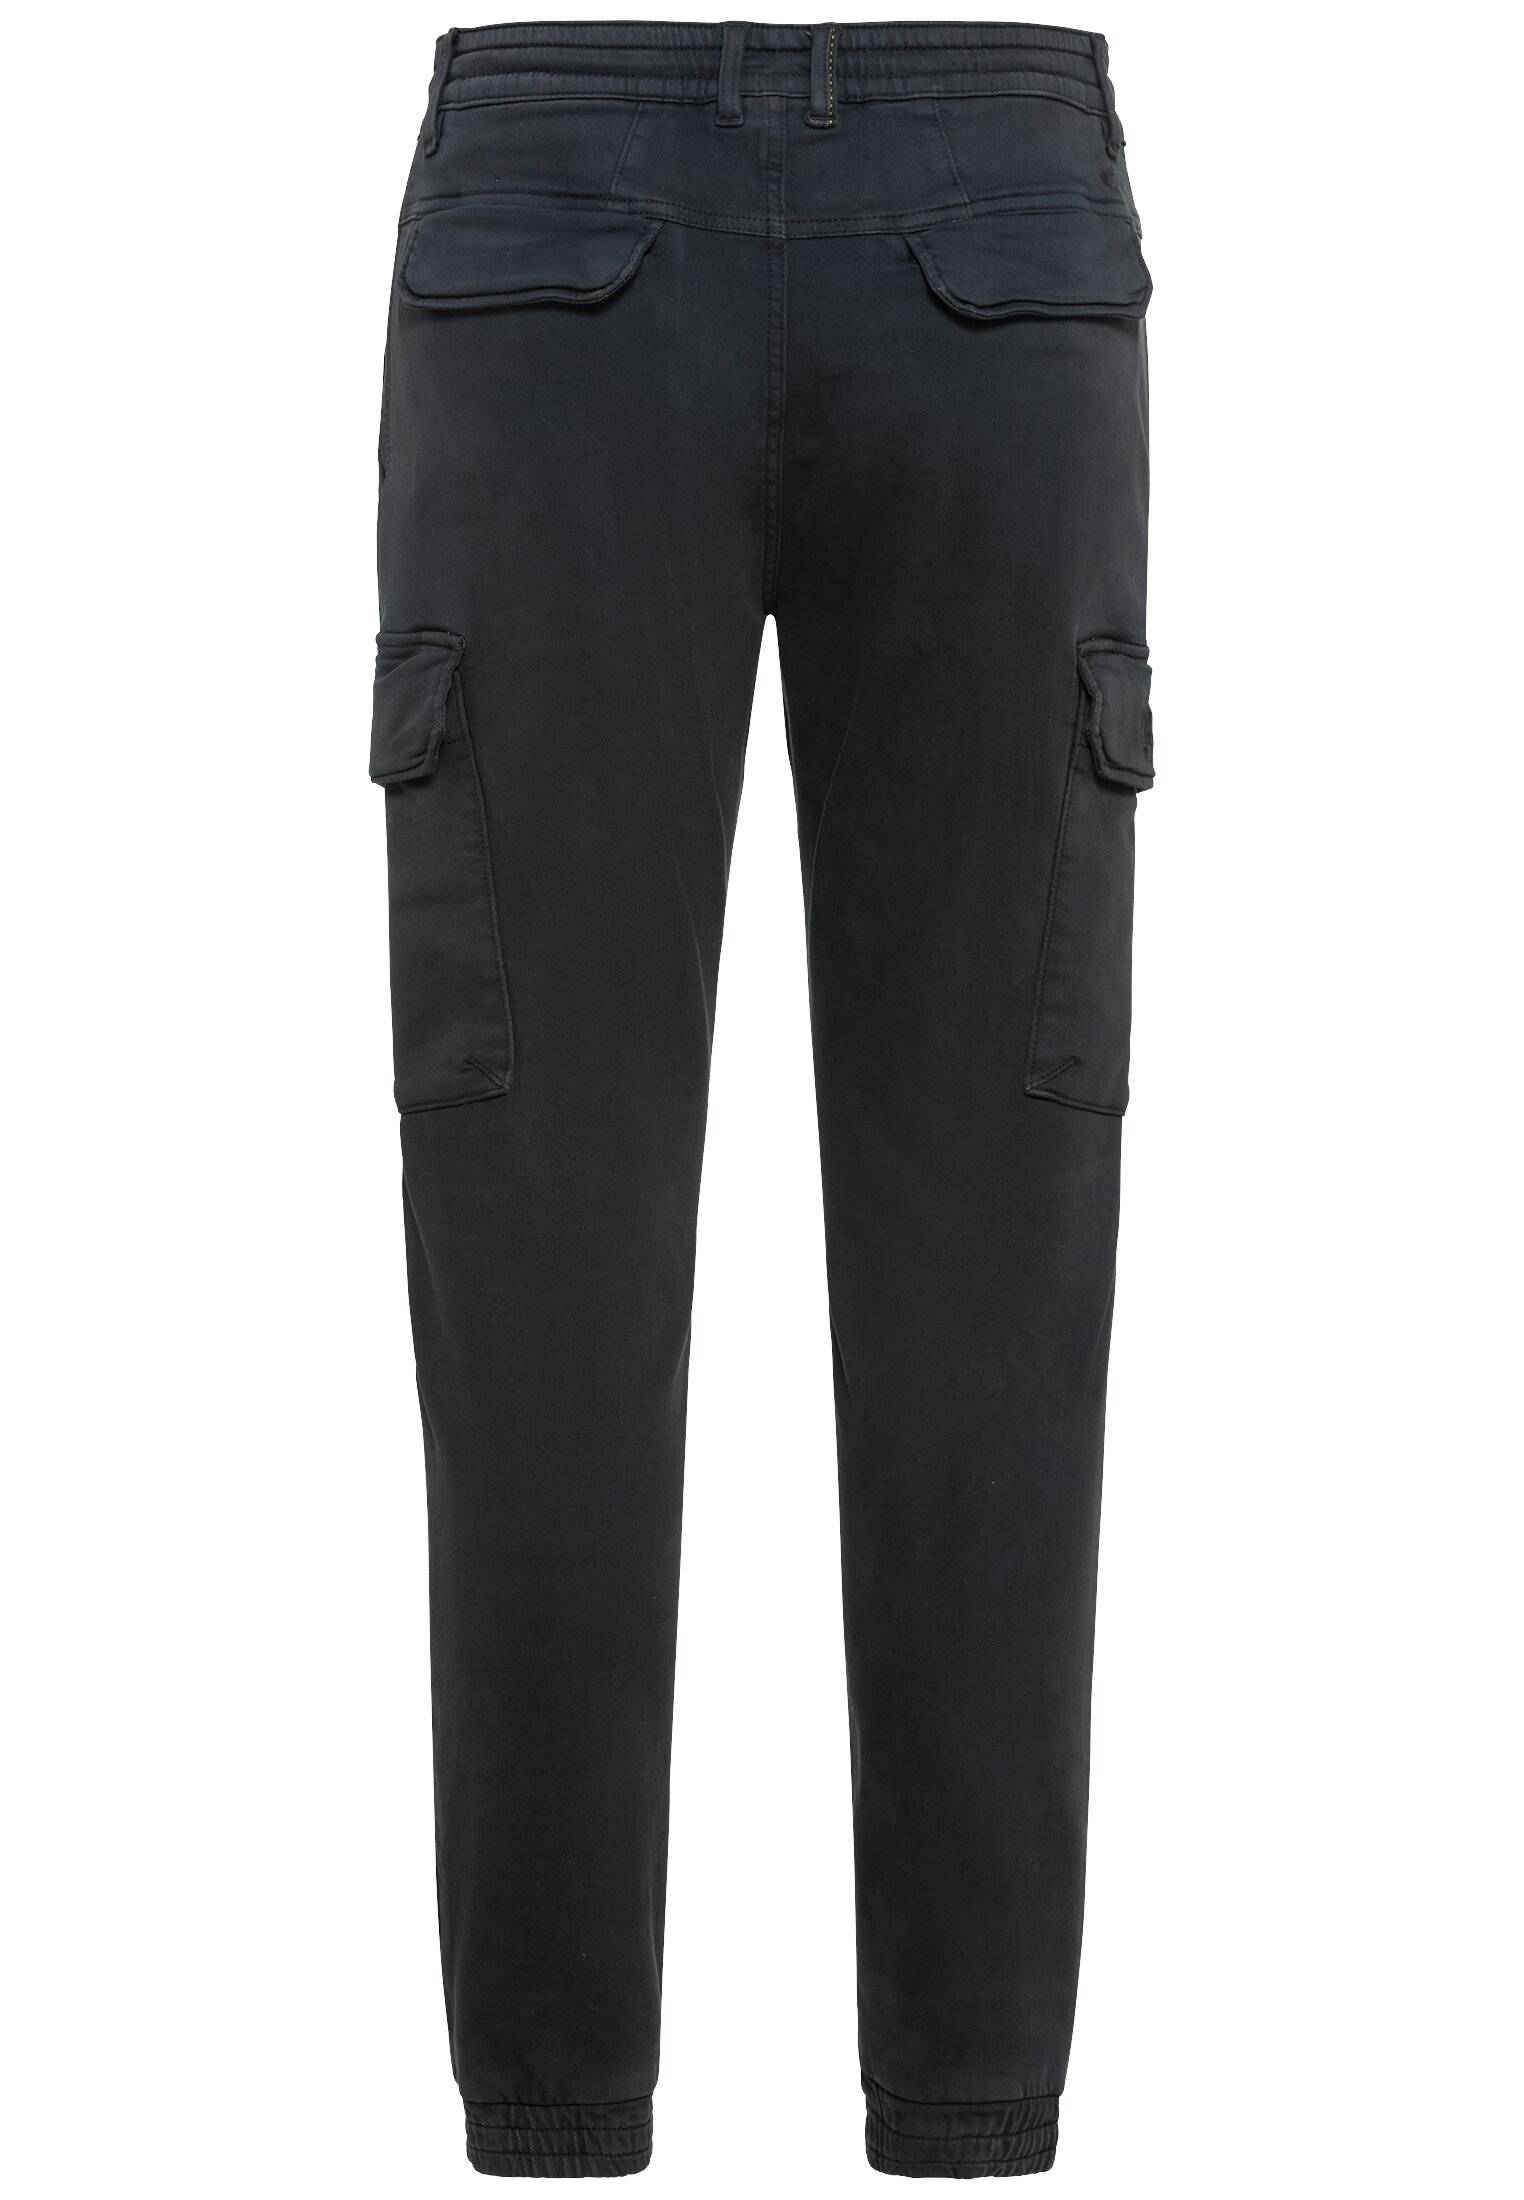 Мужские брюки Camel Active, серые, цвет серый, размер 36 - фото 2